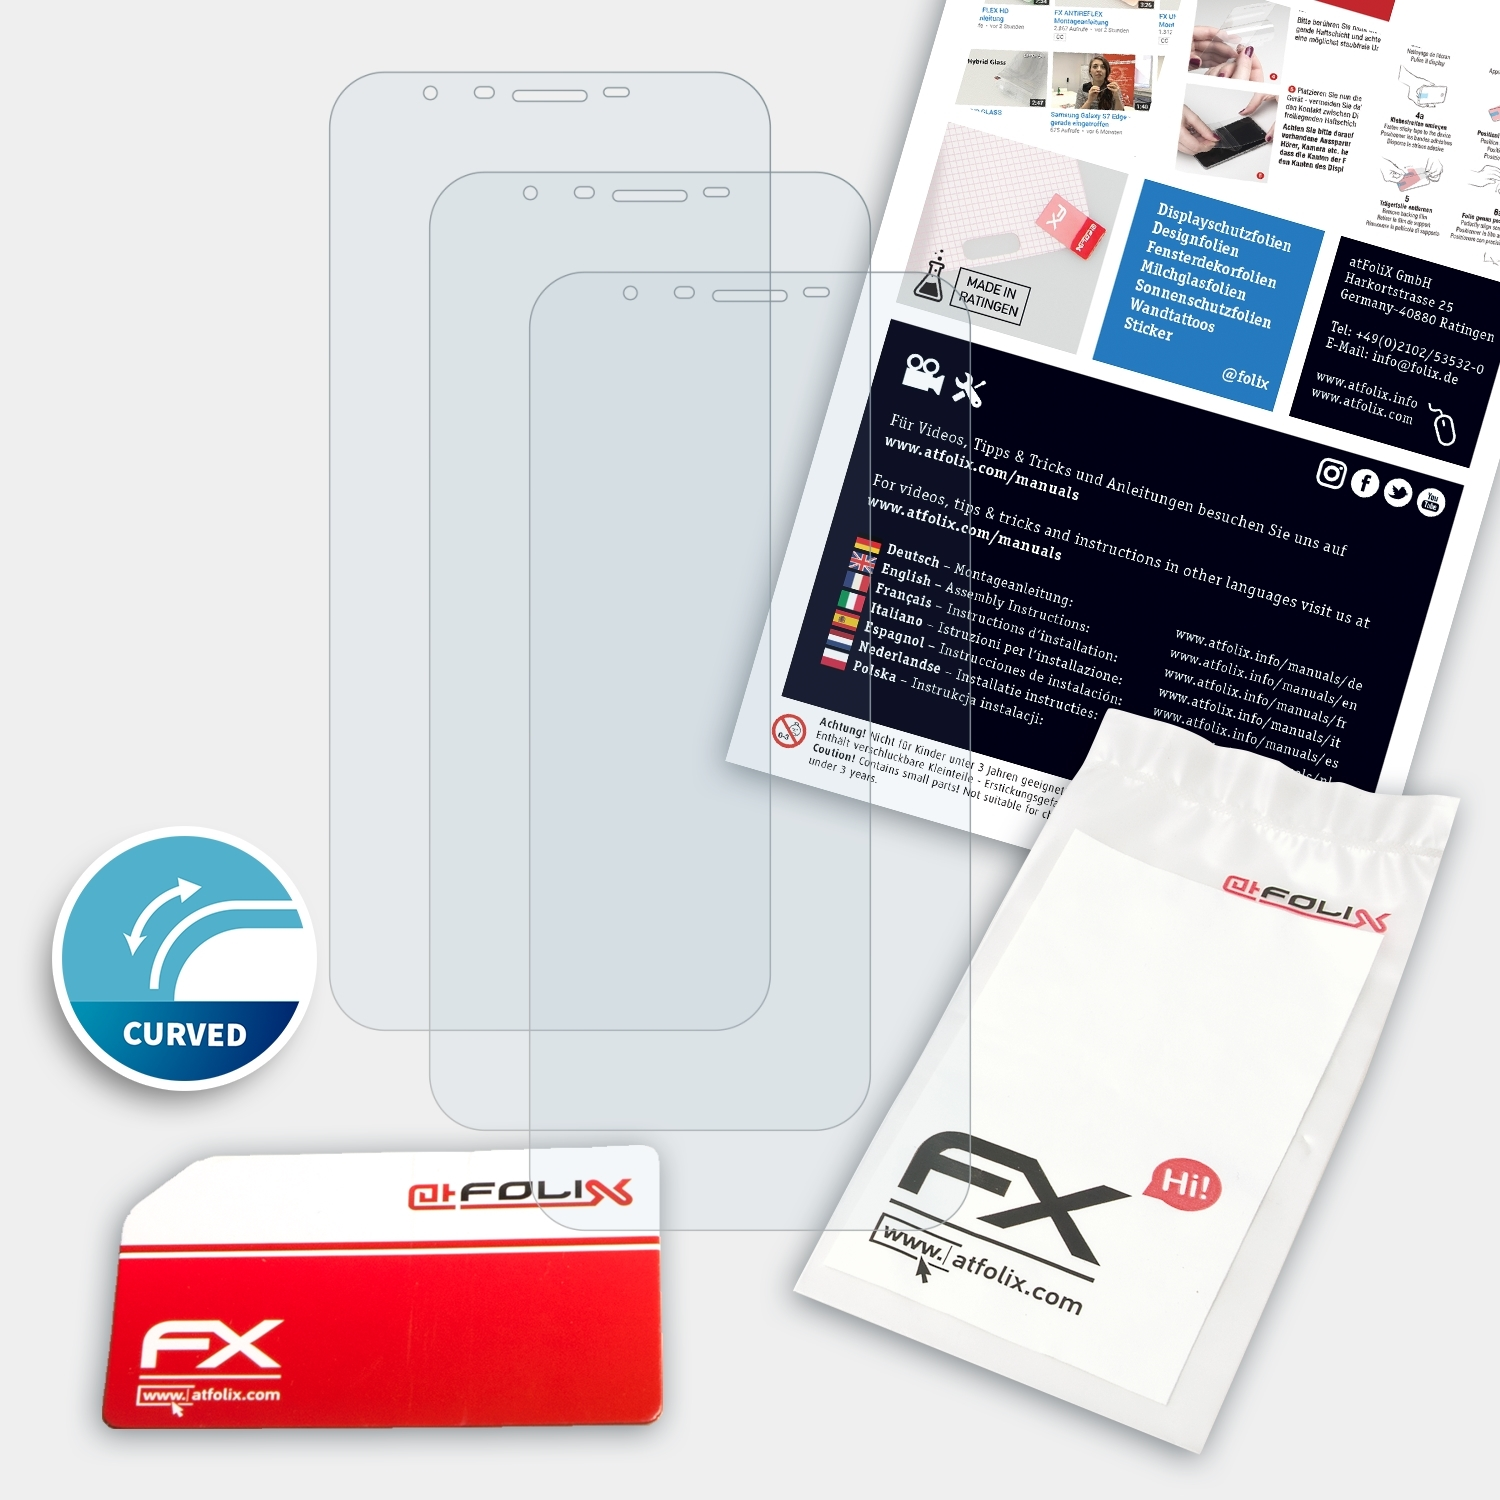 ATFOLIX Nuu Mobile G2) Displayschutz(für 3x FX-ActiFleX